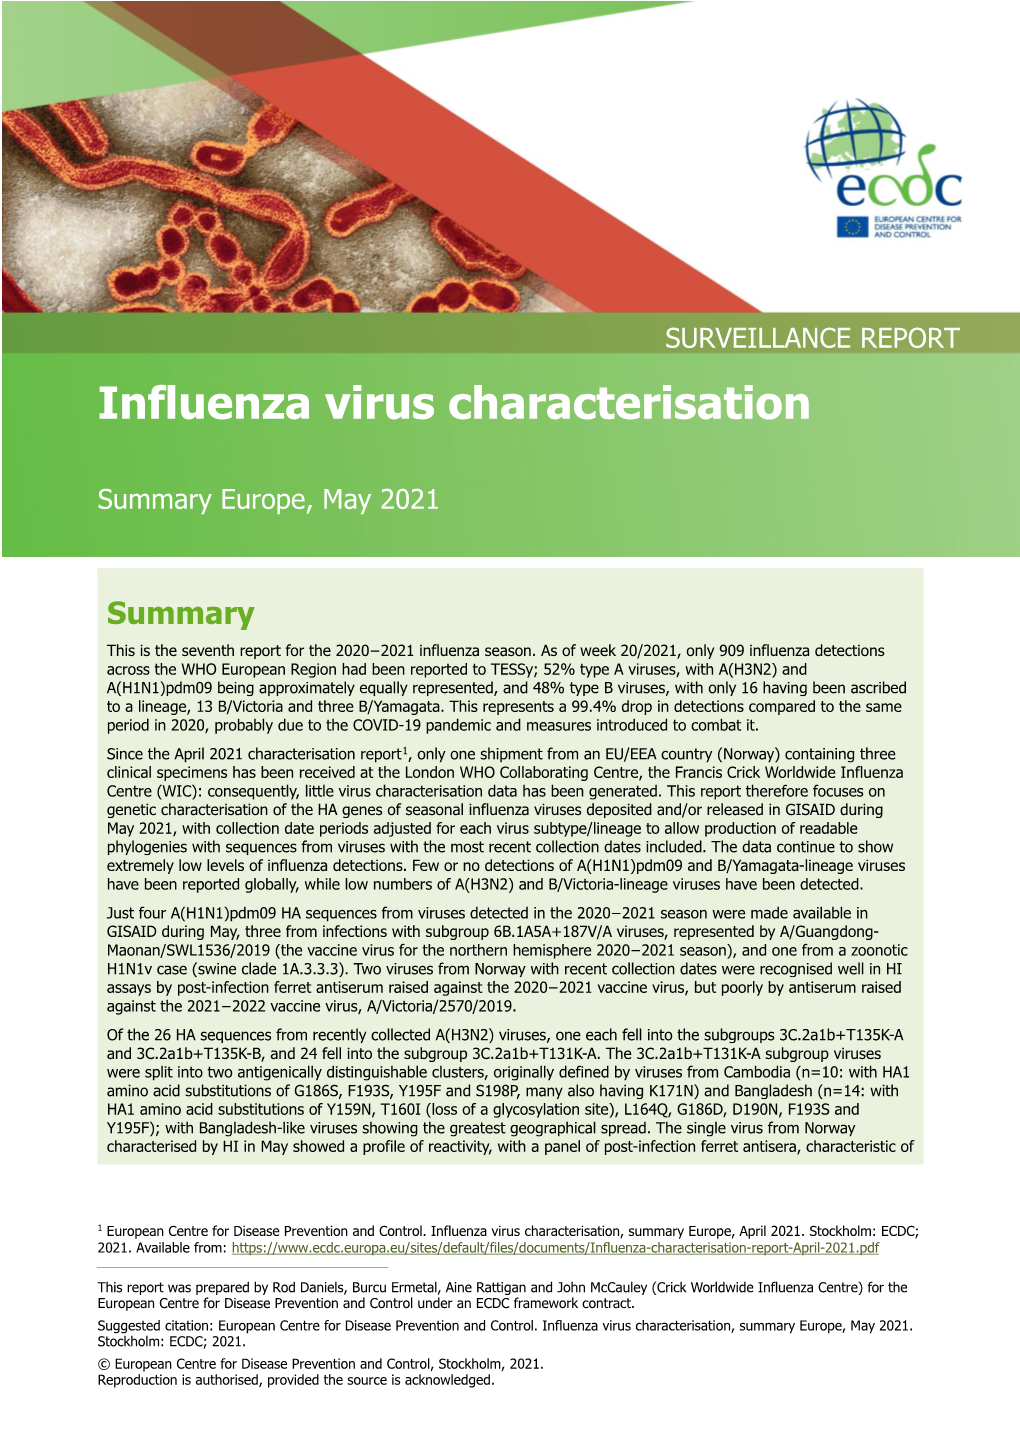 Influenza Virus Characterisation Report